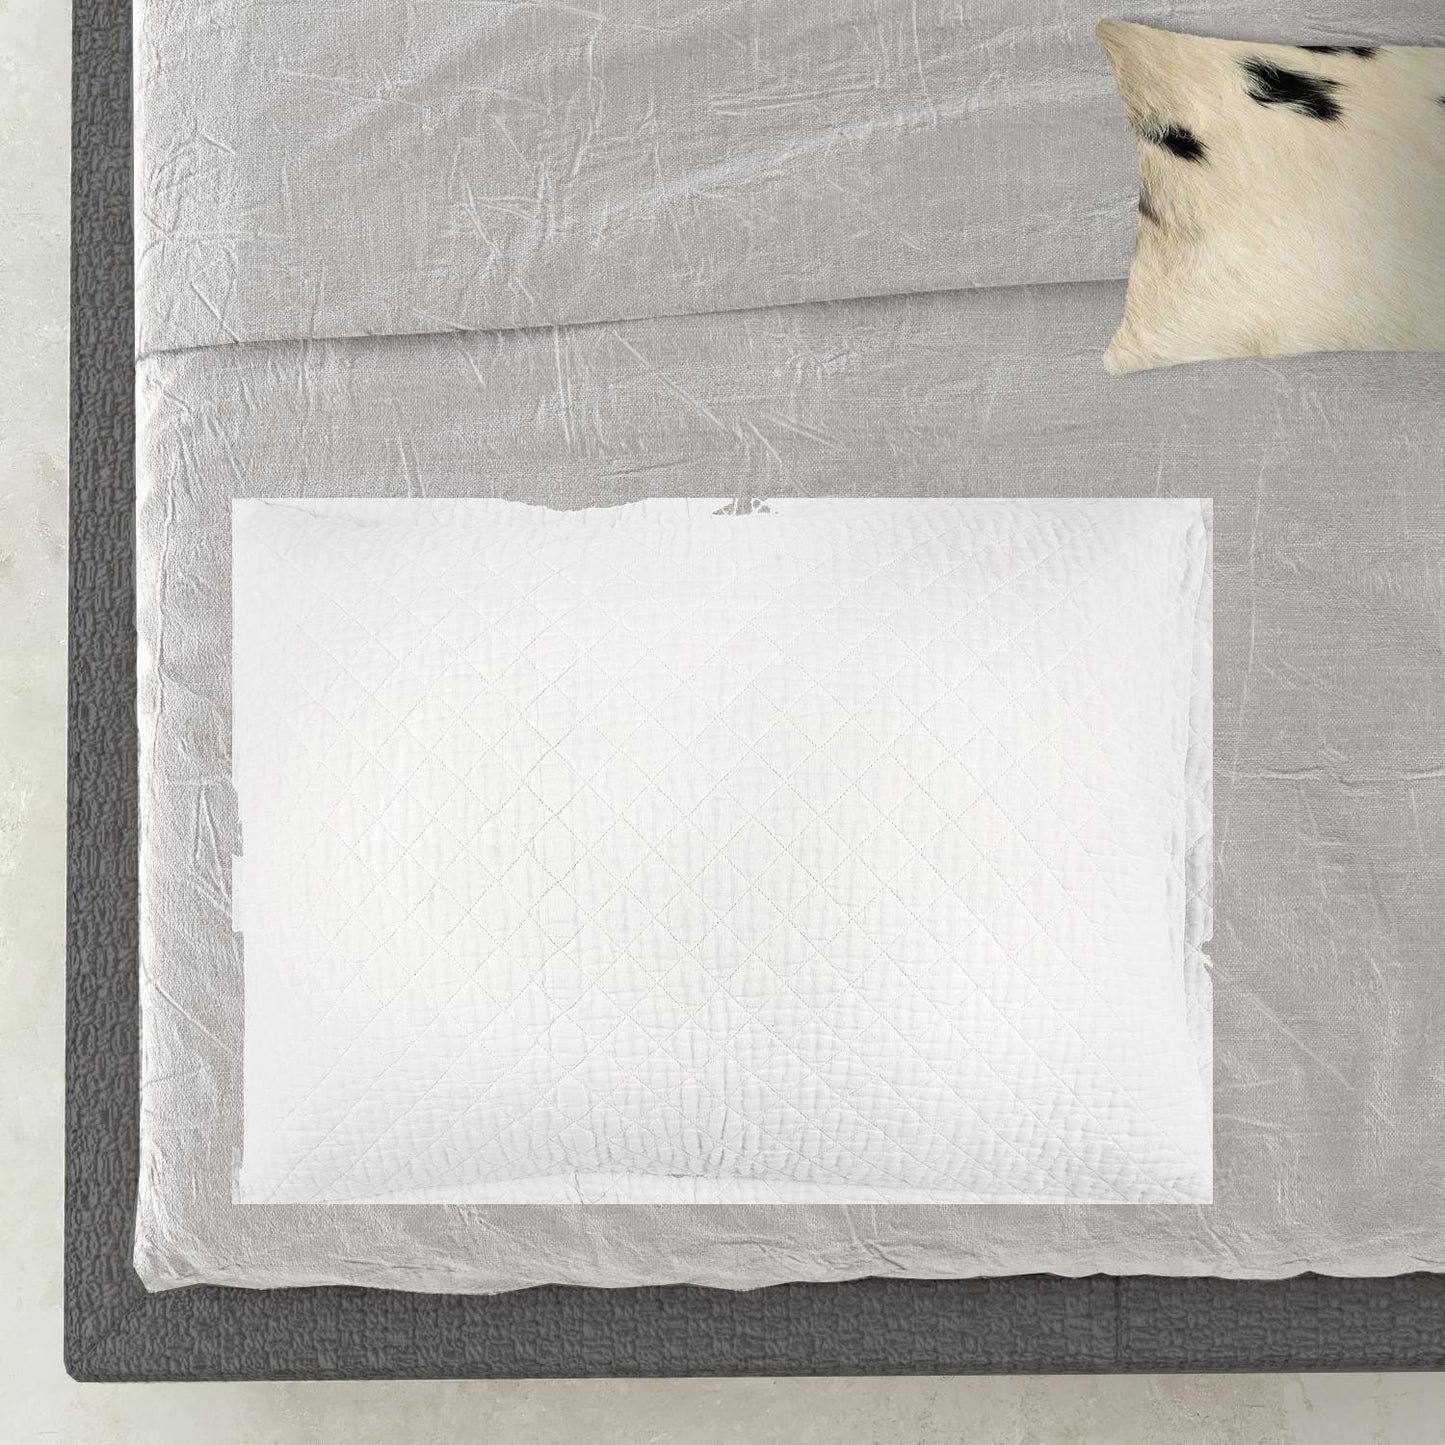 White Queen 100% Cotton 300 Thread Count Machine Washable Down Alternative Comforter - FurniFindUSA